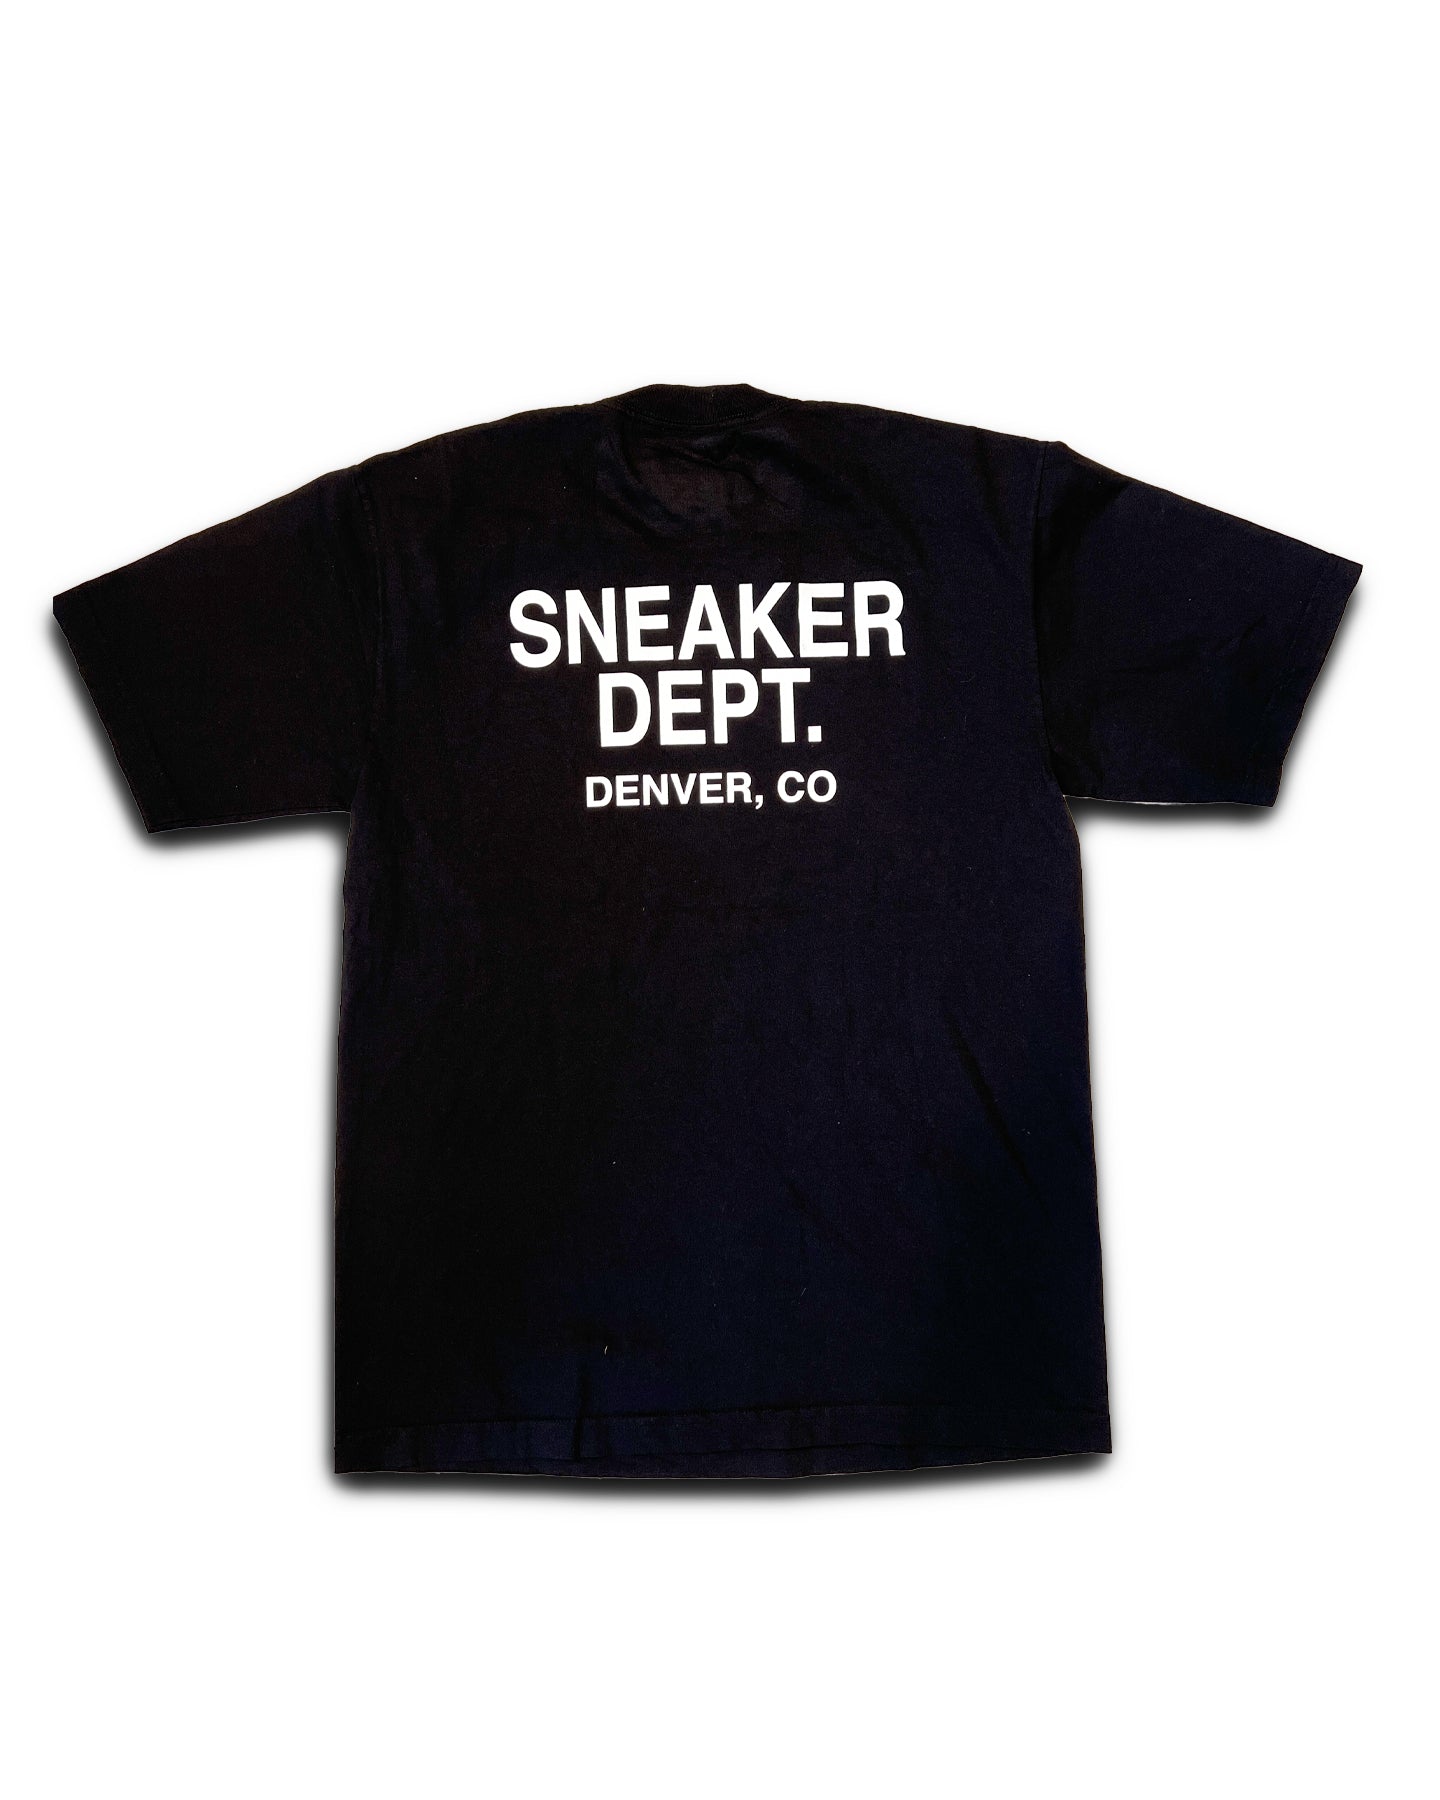 SNEAKER DEPT. DENVER - BLACK TEE